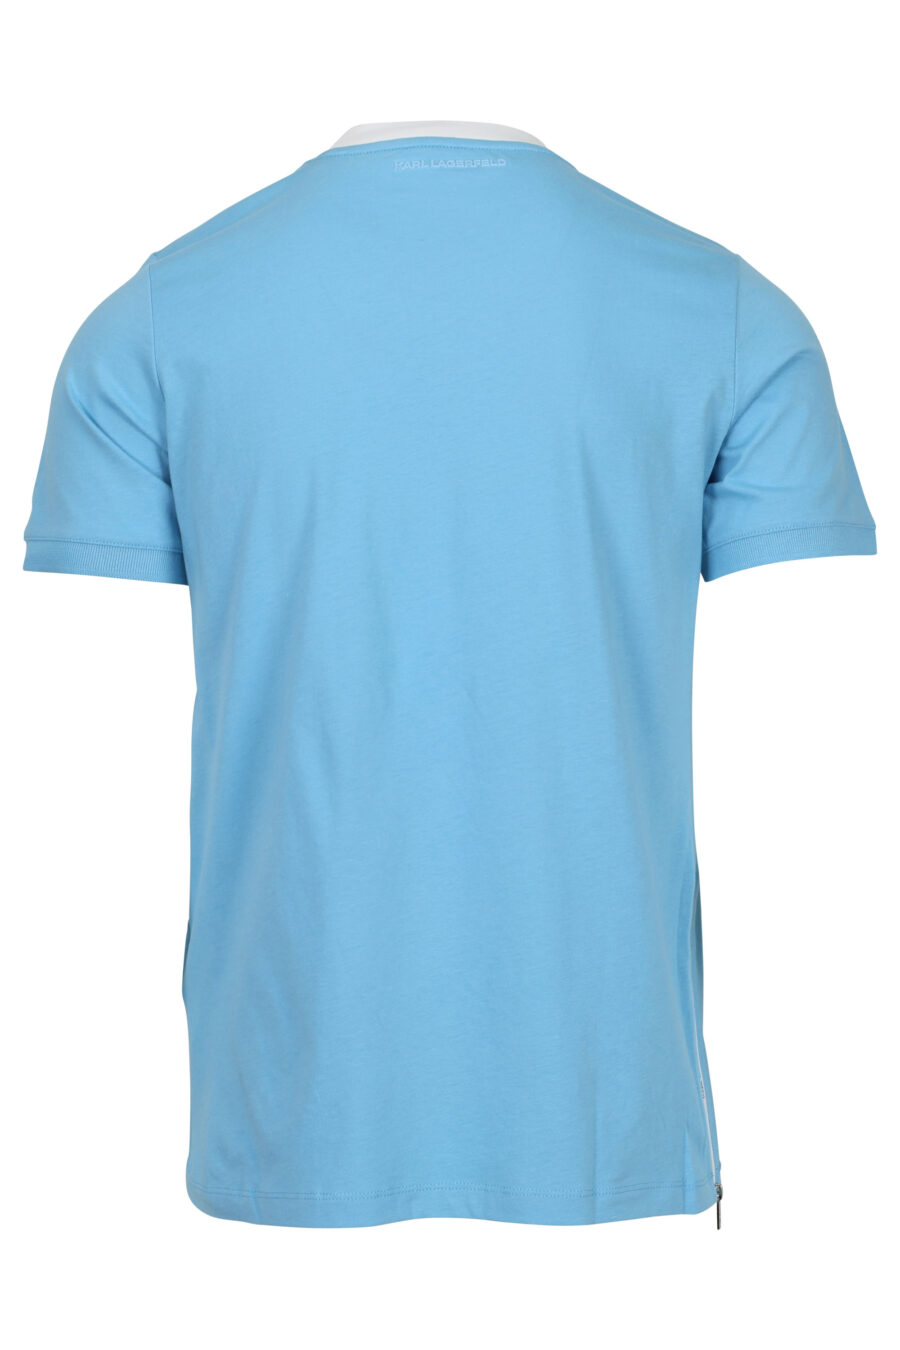 Camiseta azul claro con cuello blanco y minilogo "karl" - 4062226955751 1